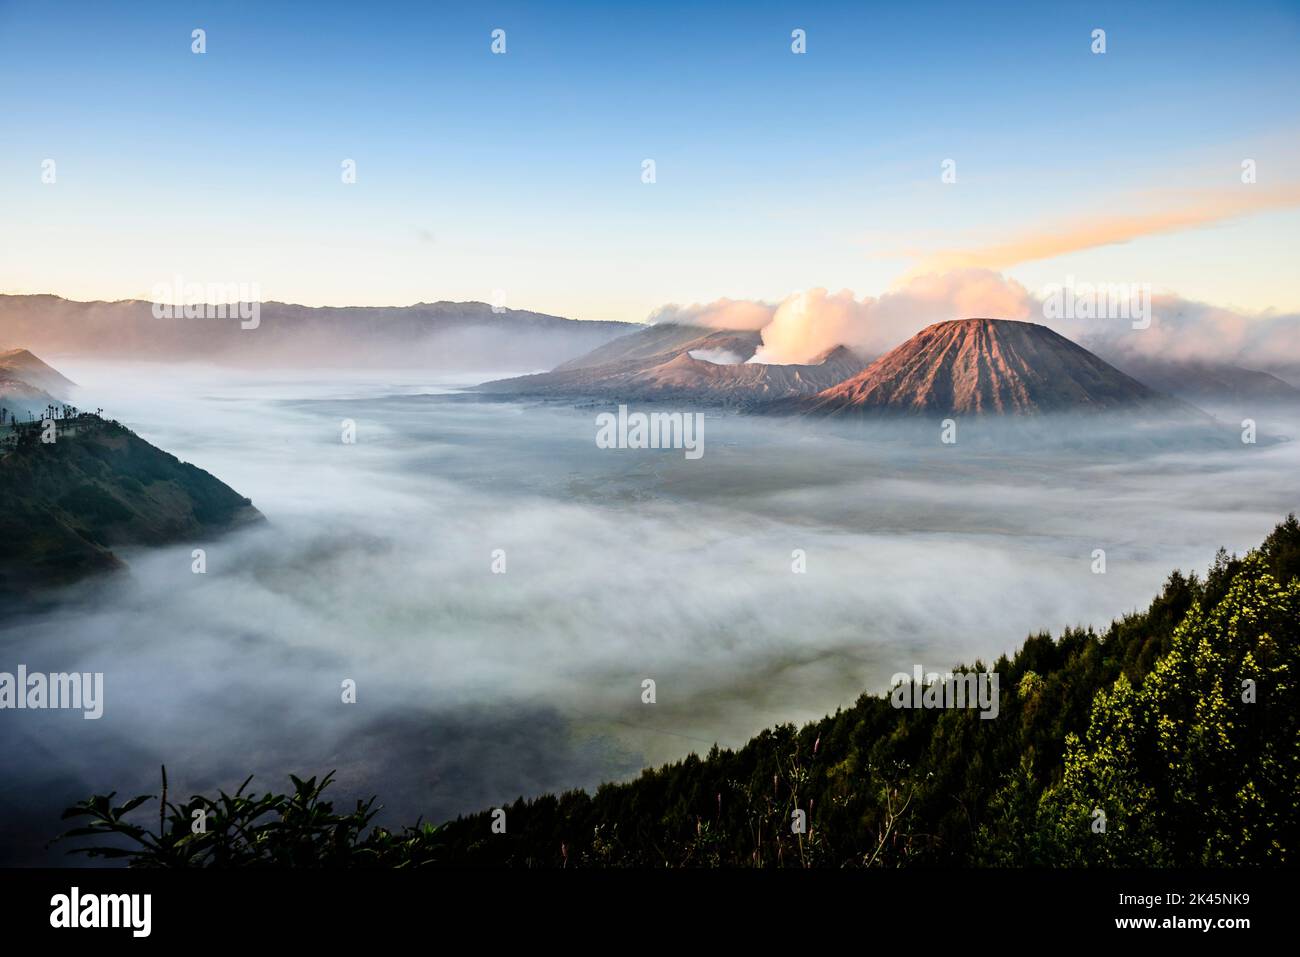 Monte bromo vulcano, un vulcano somma e parte della catena montuosa Tengger, il cono che si erge sopra la nebbia nel paesaggio. Foto Stock